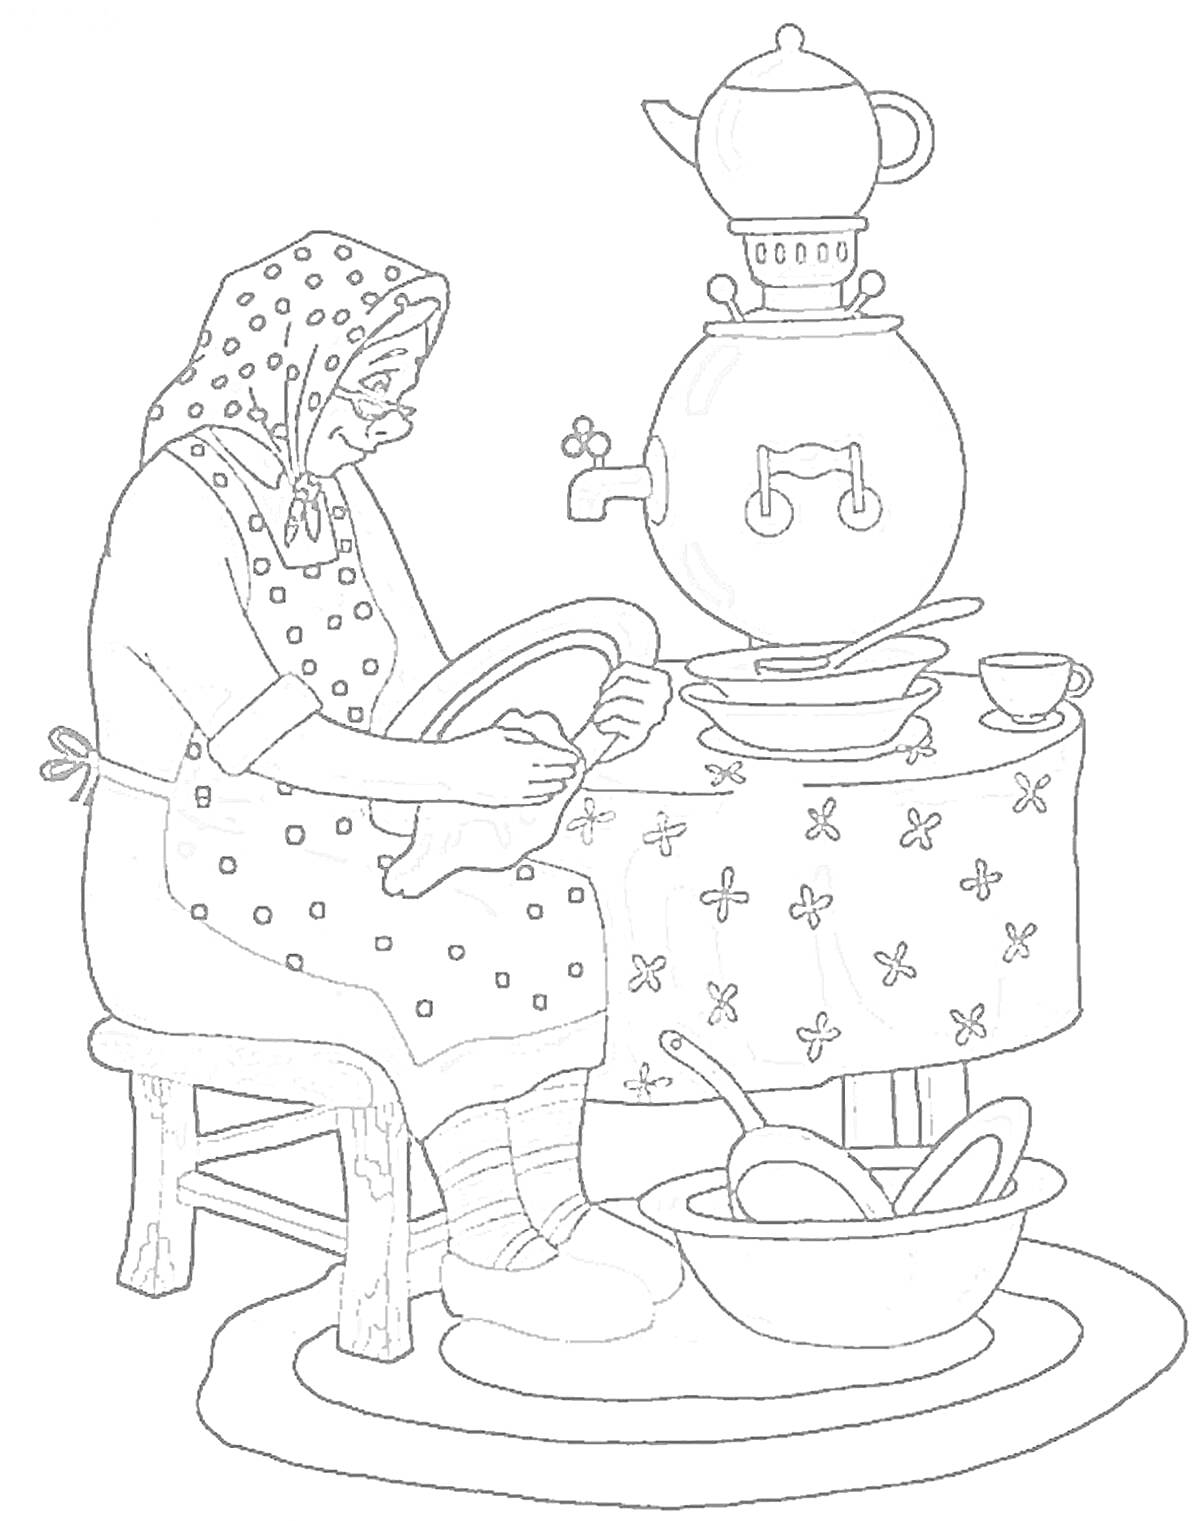 Бабушка моет посуду, кипящий самовар, тарелки и чашки на столе, таз с ложками на полу